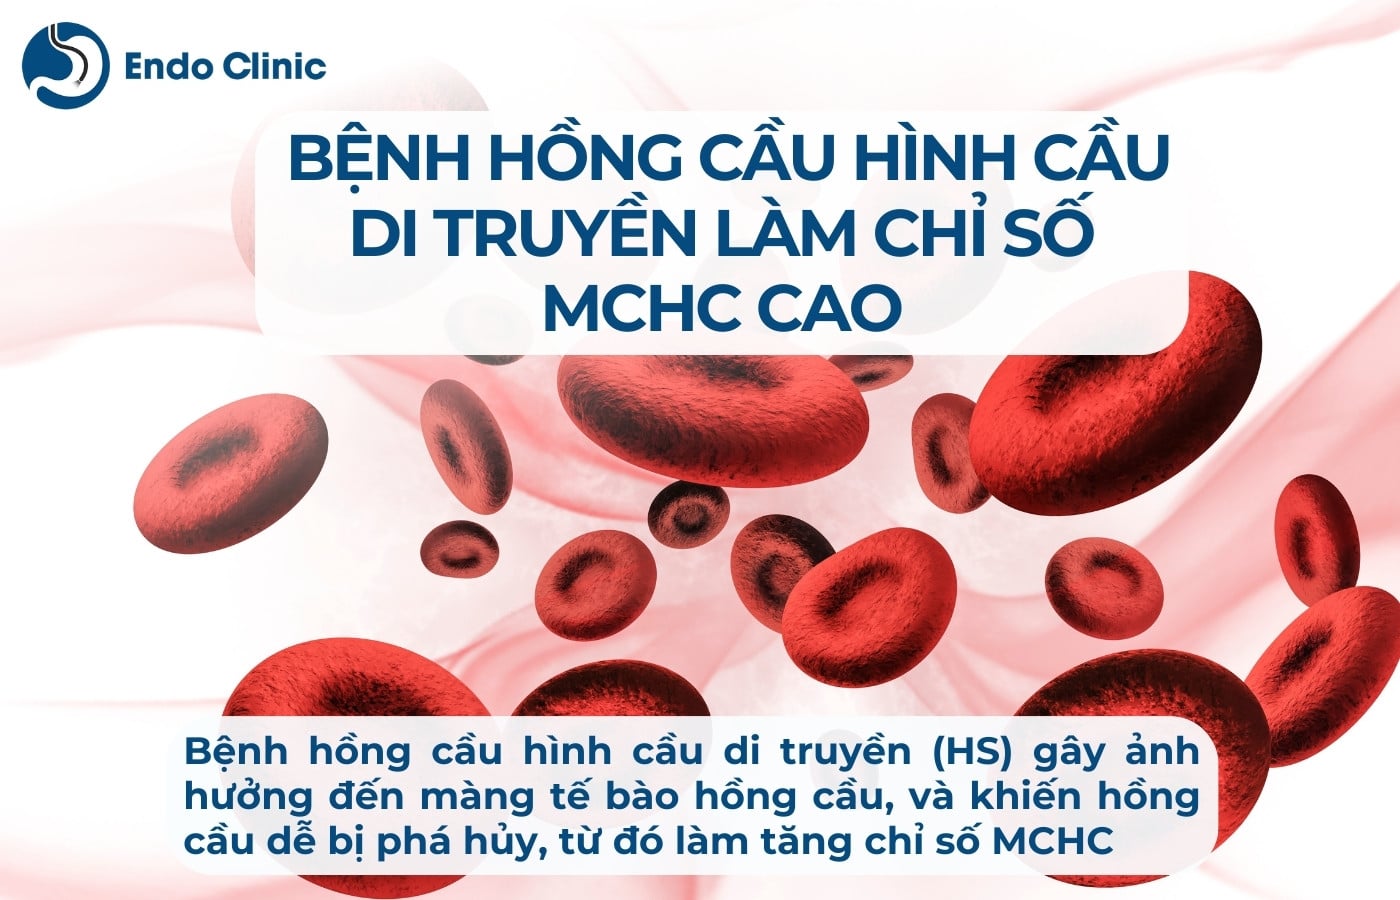 Bệnh hồng cầu hình cầu di truyền làm chỉ số MCHC trong xét nghiệm máu tăng cao